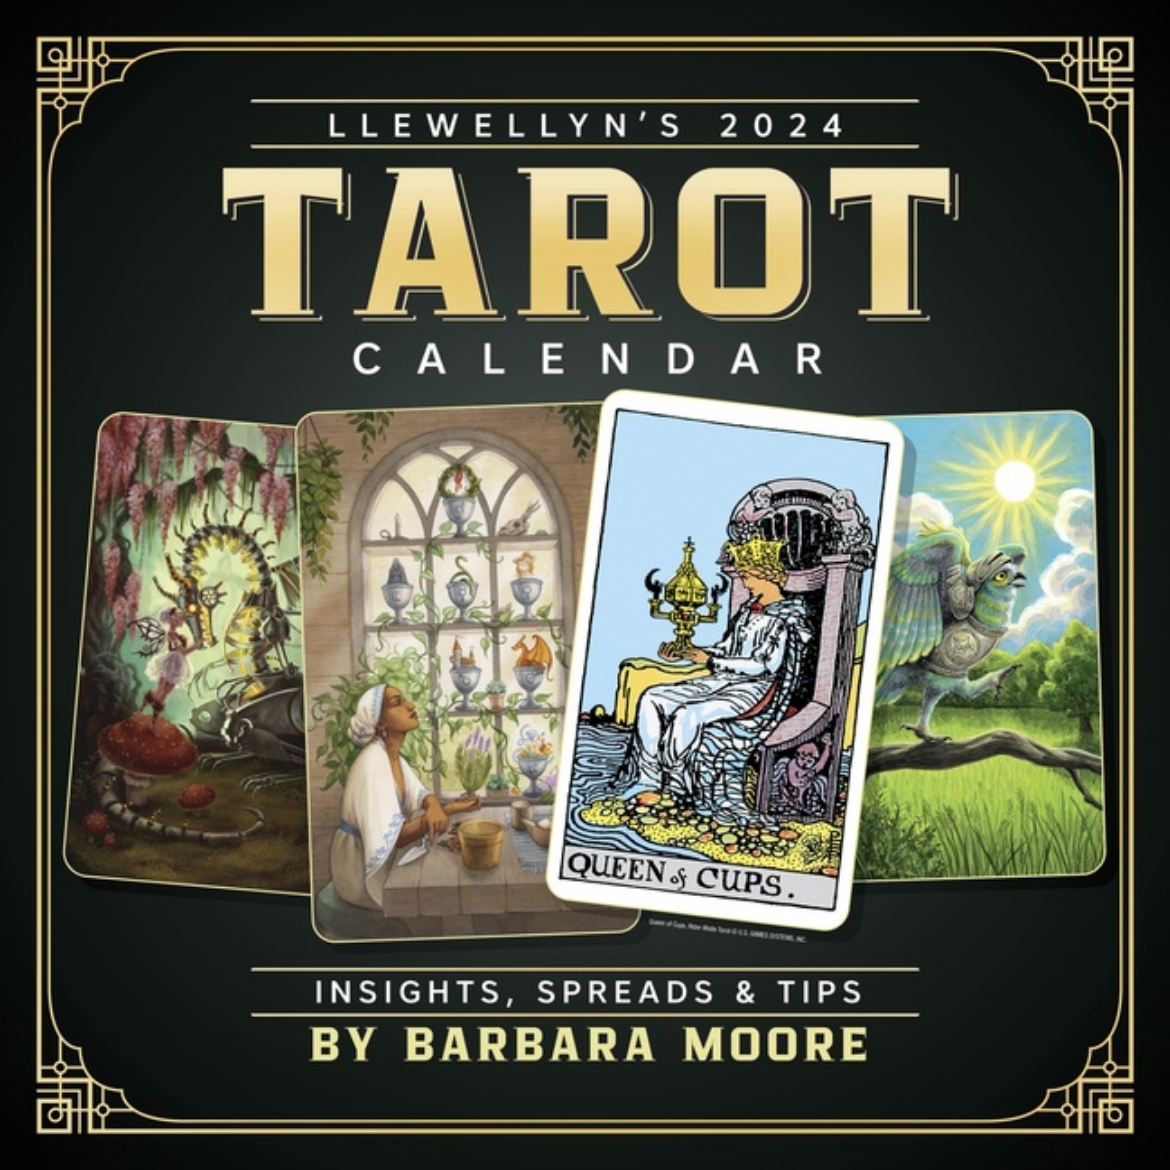 STARDIST. Llewellyn's 2024 Tarot Calendar